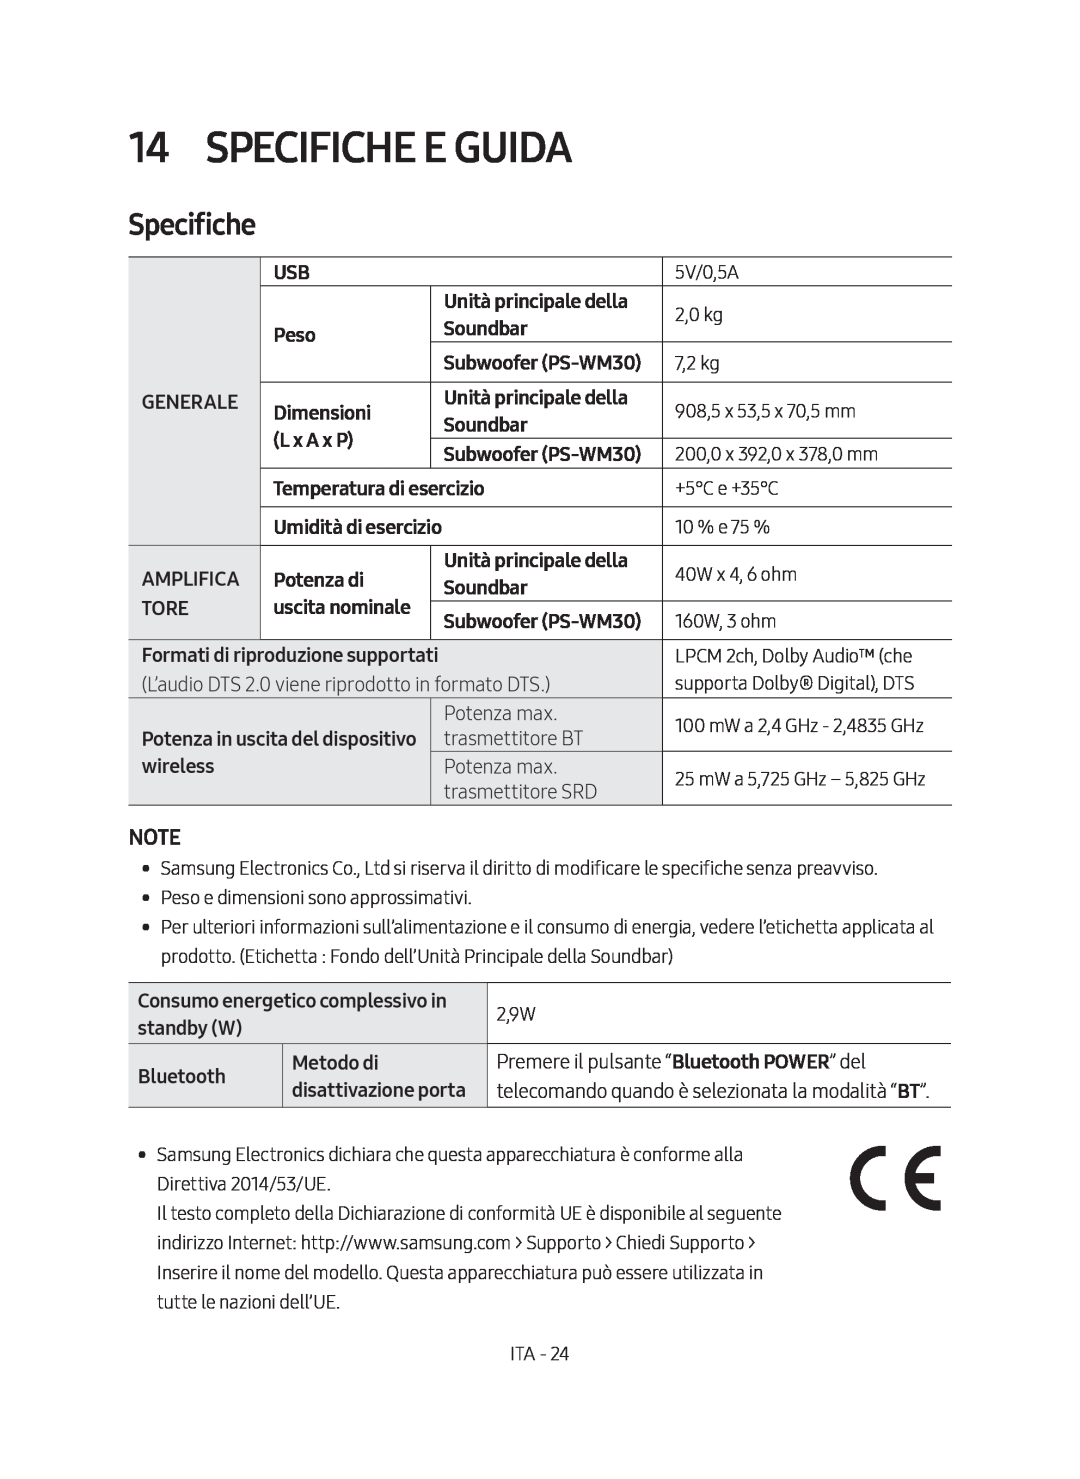 Samsung HW-M450/EN Specifiche E Guida, Unità principale della, Peso, Soundbar, Generale, Dimensioni, L x A x P, Amplifica 